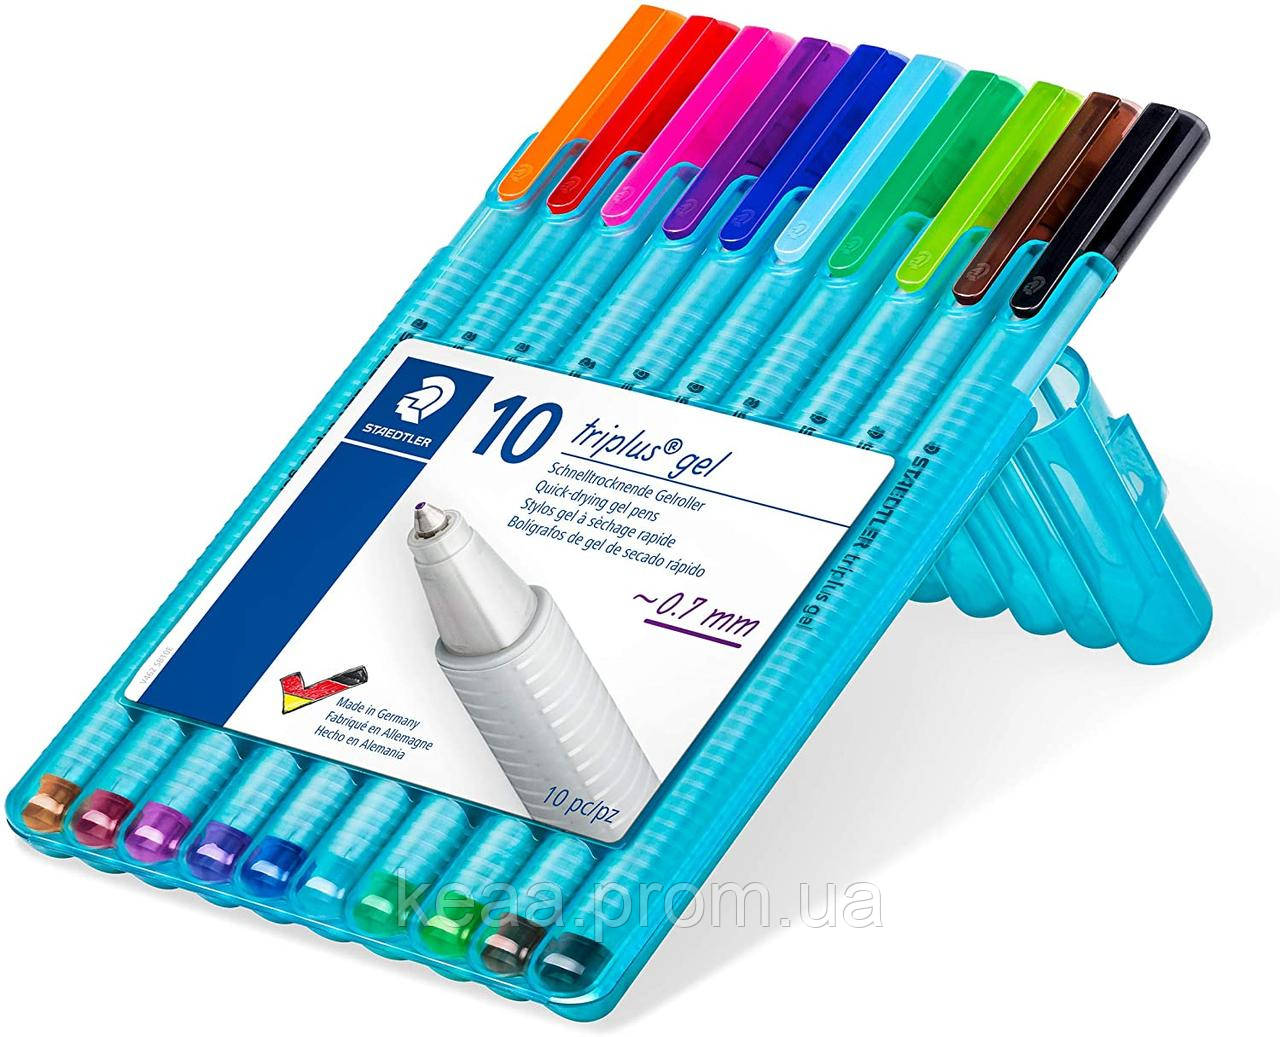 Ручки-ролери Staedtler Triplus gel 10 кольорів